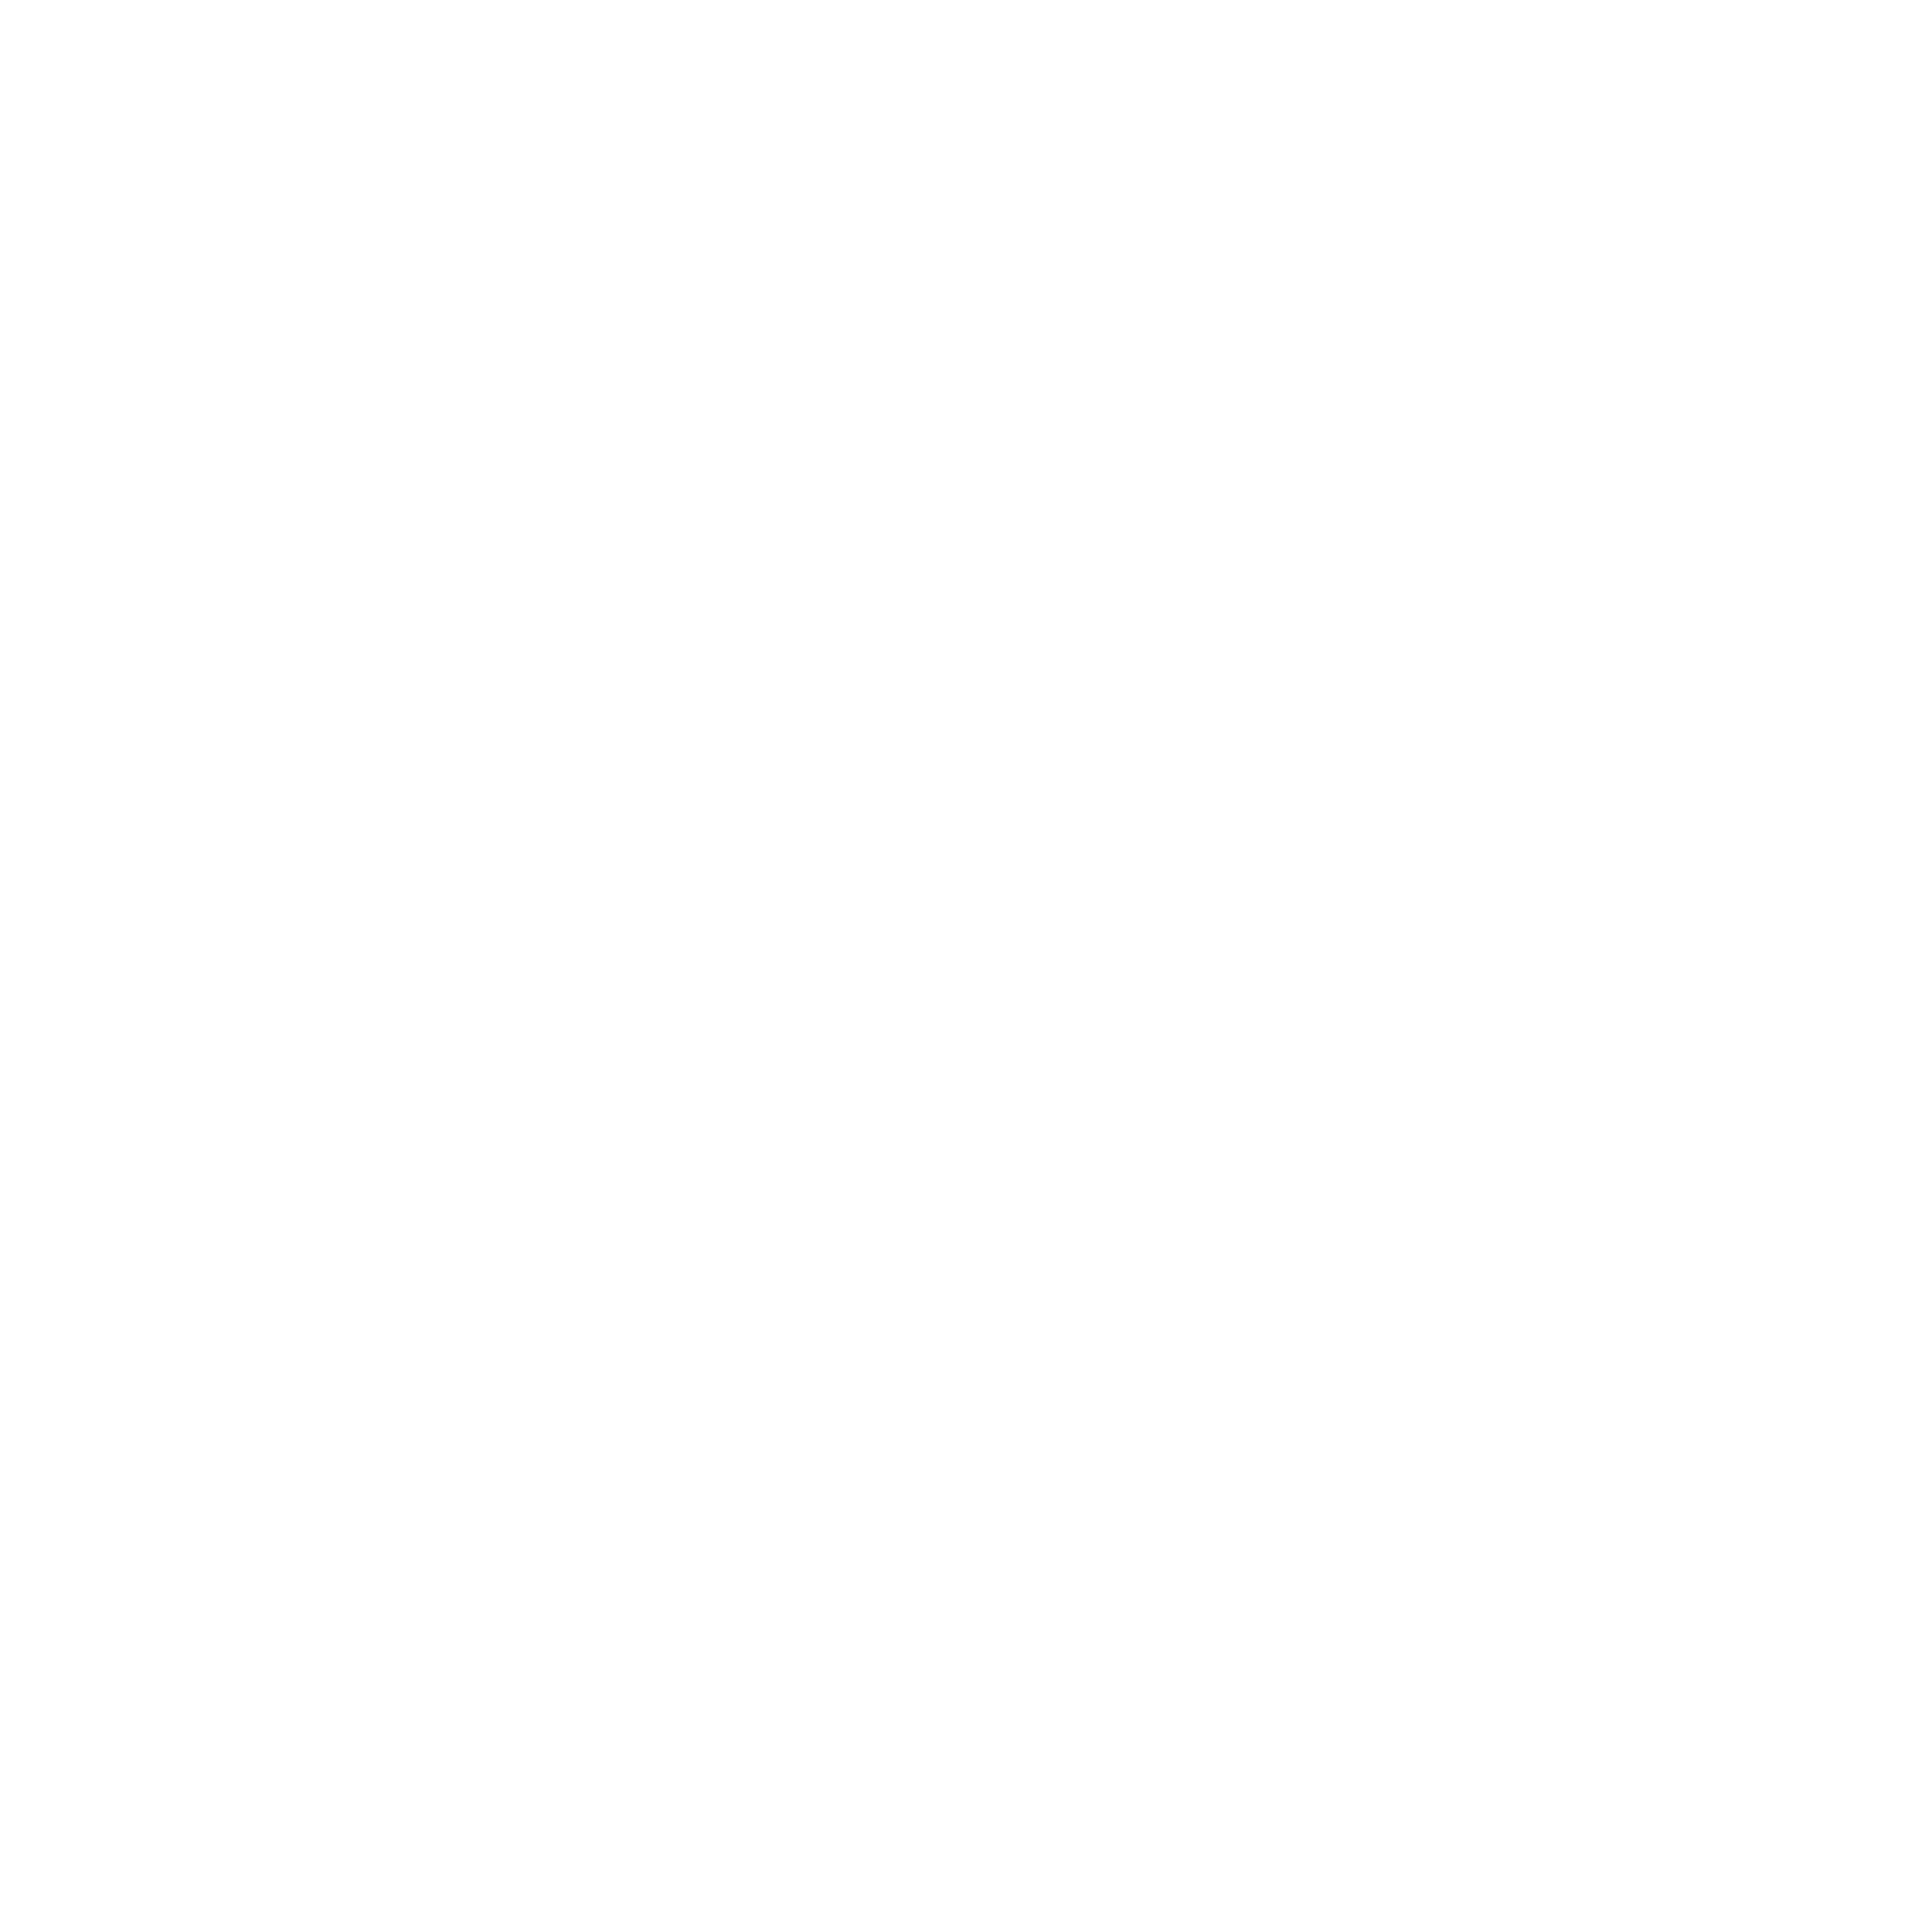 A stylized Instagram logo